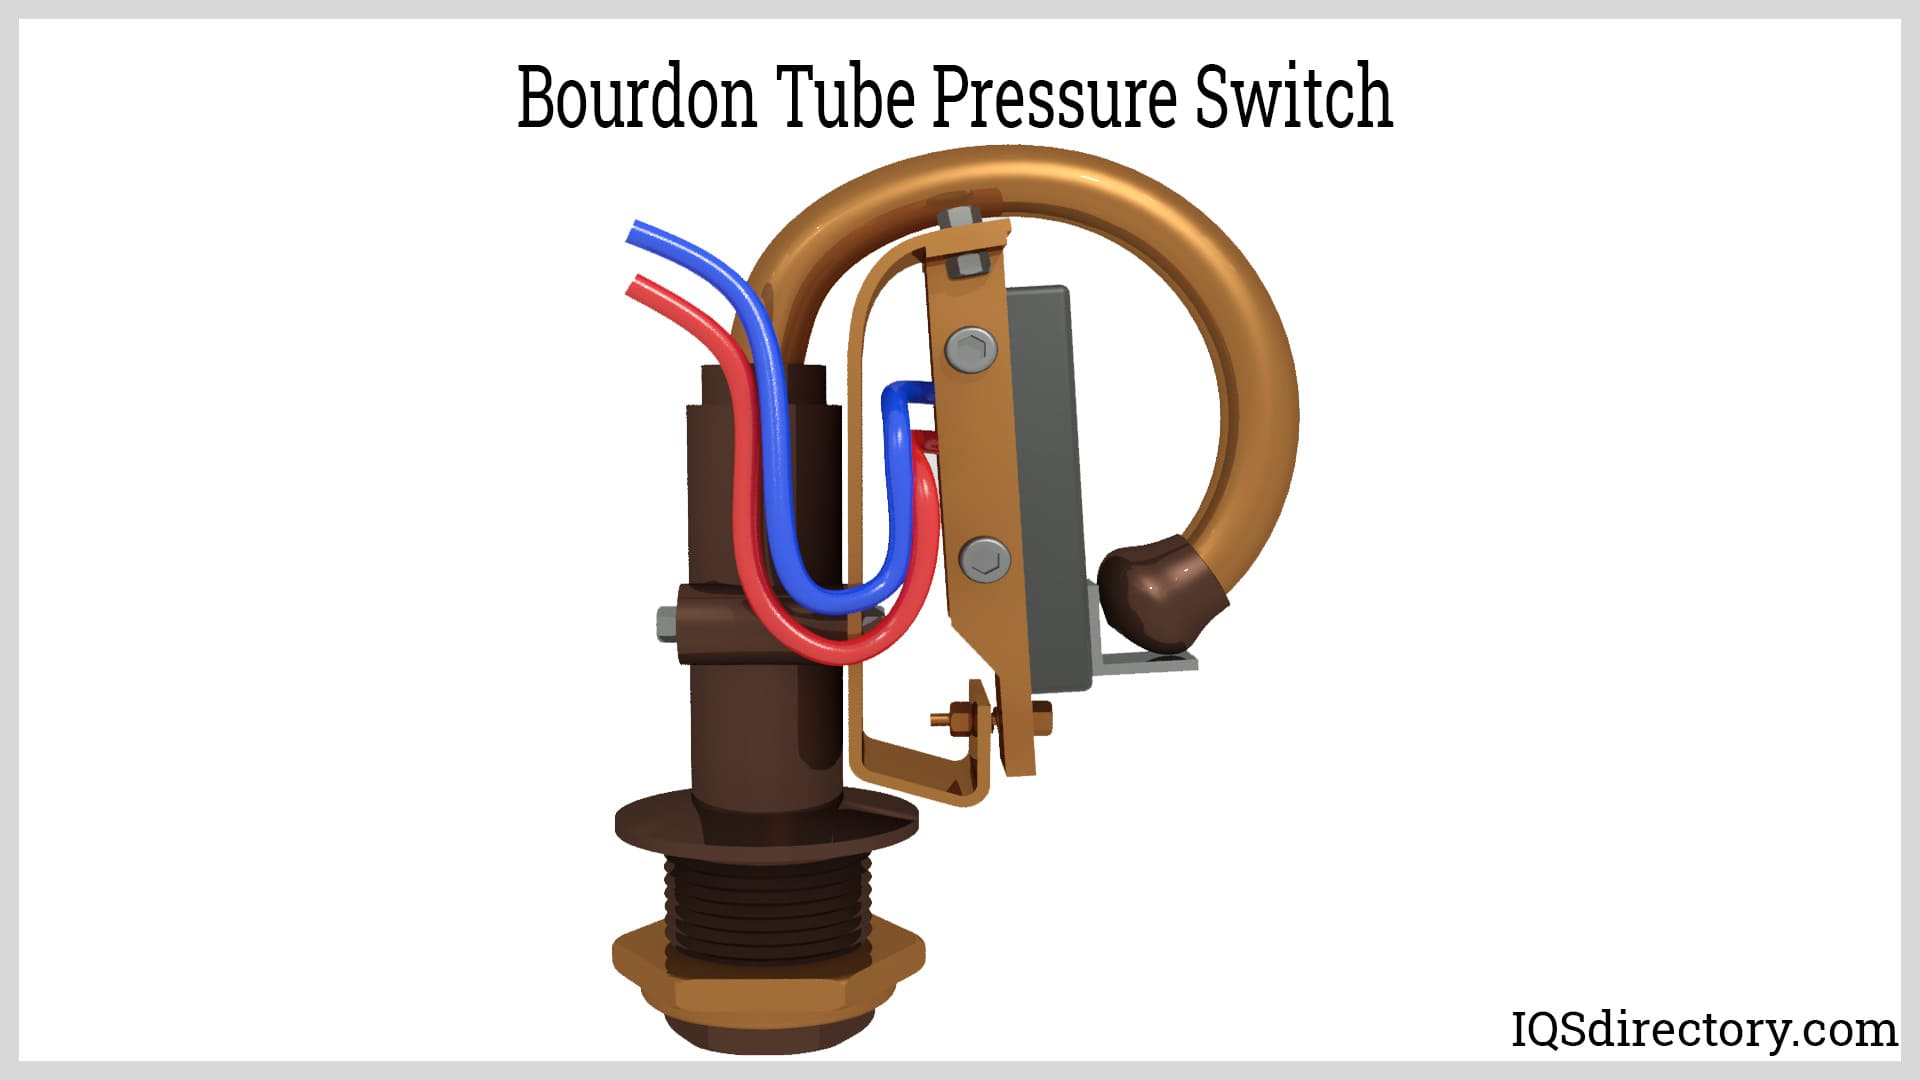 Bourdon Tube Pressure Switch